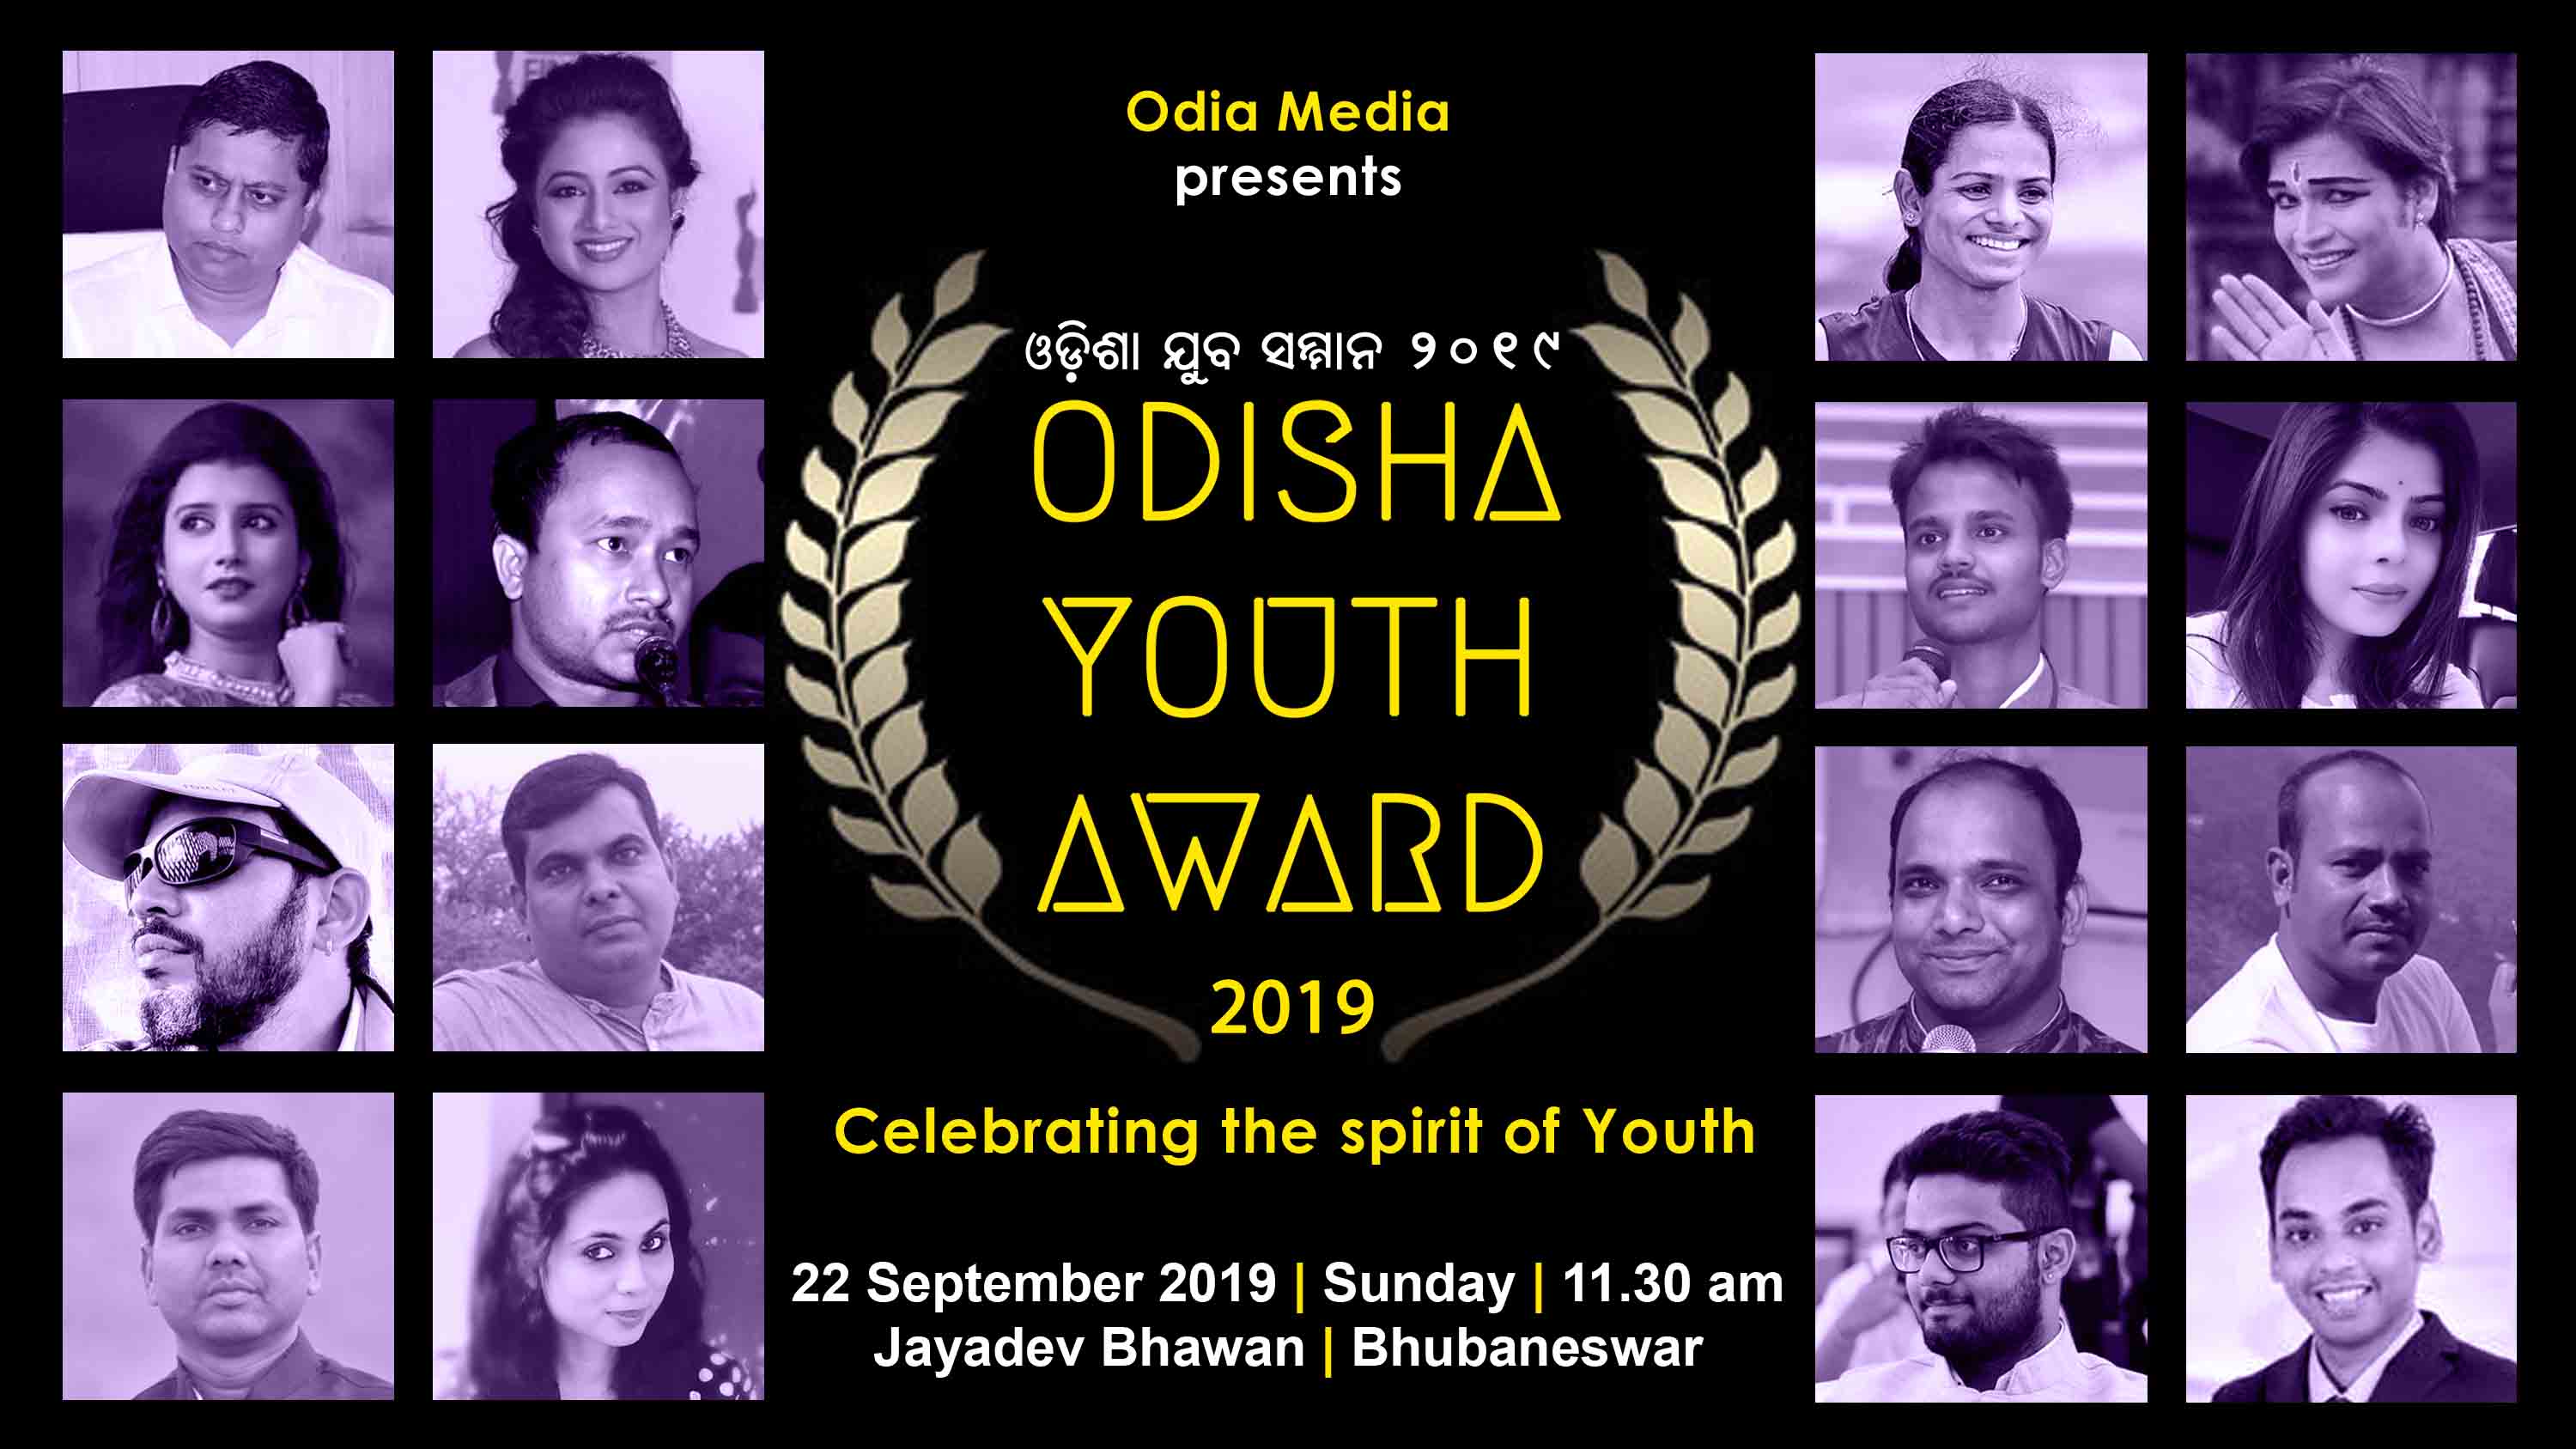 Odisha Youth Award 2019 1